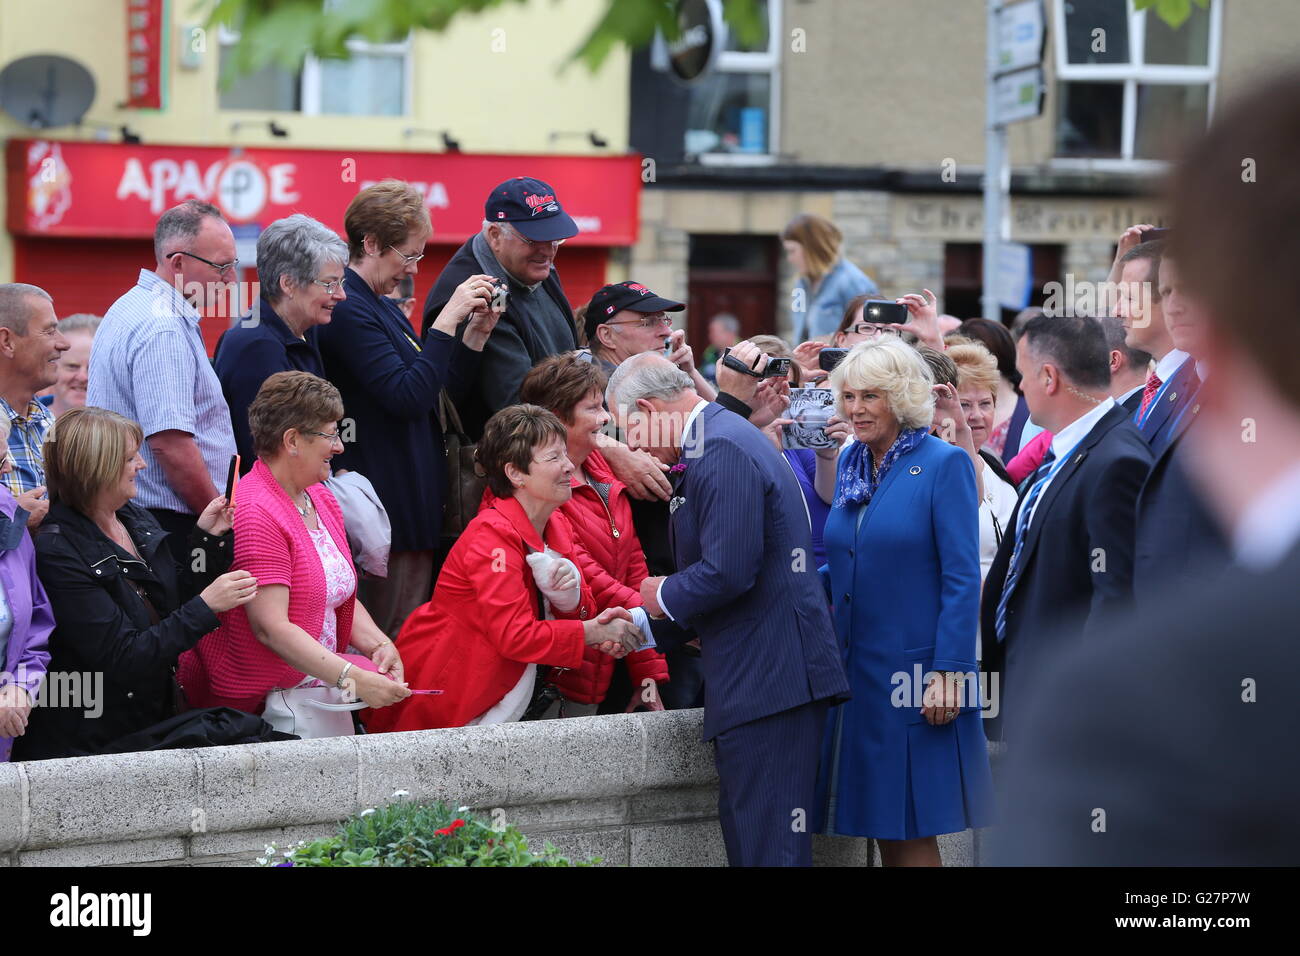 Le Prince de Galles et la duchesse de Cornouailles sont accueillis par sympathisants comme ils visitent la ville de Donegal en République d'Irlande dans la dernière soumission royale pour solidifier les relations anglo-irlandaises transformées. Banque D'Images